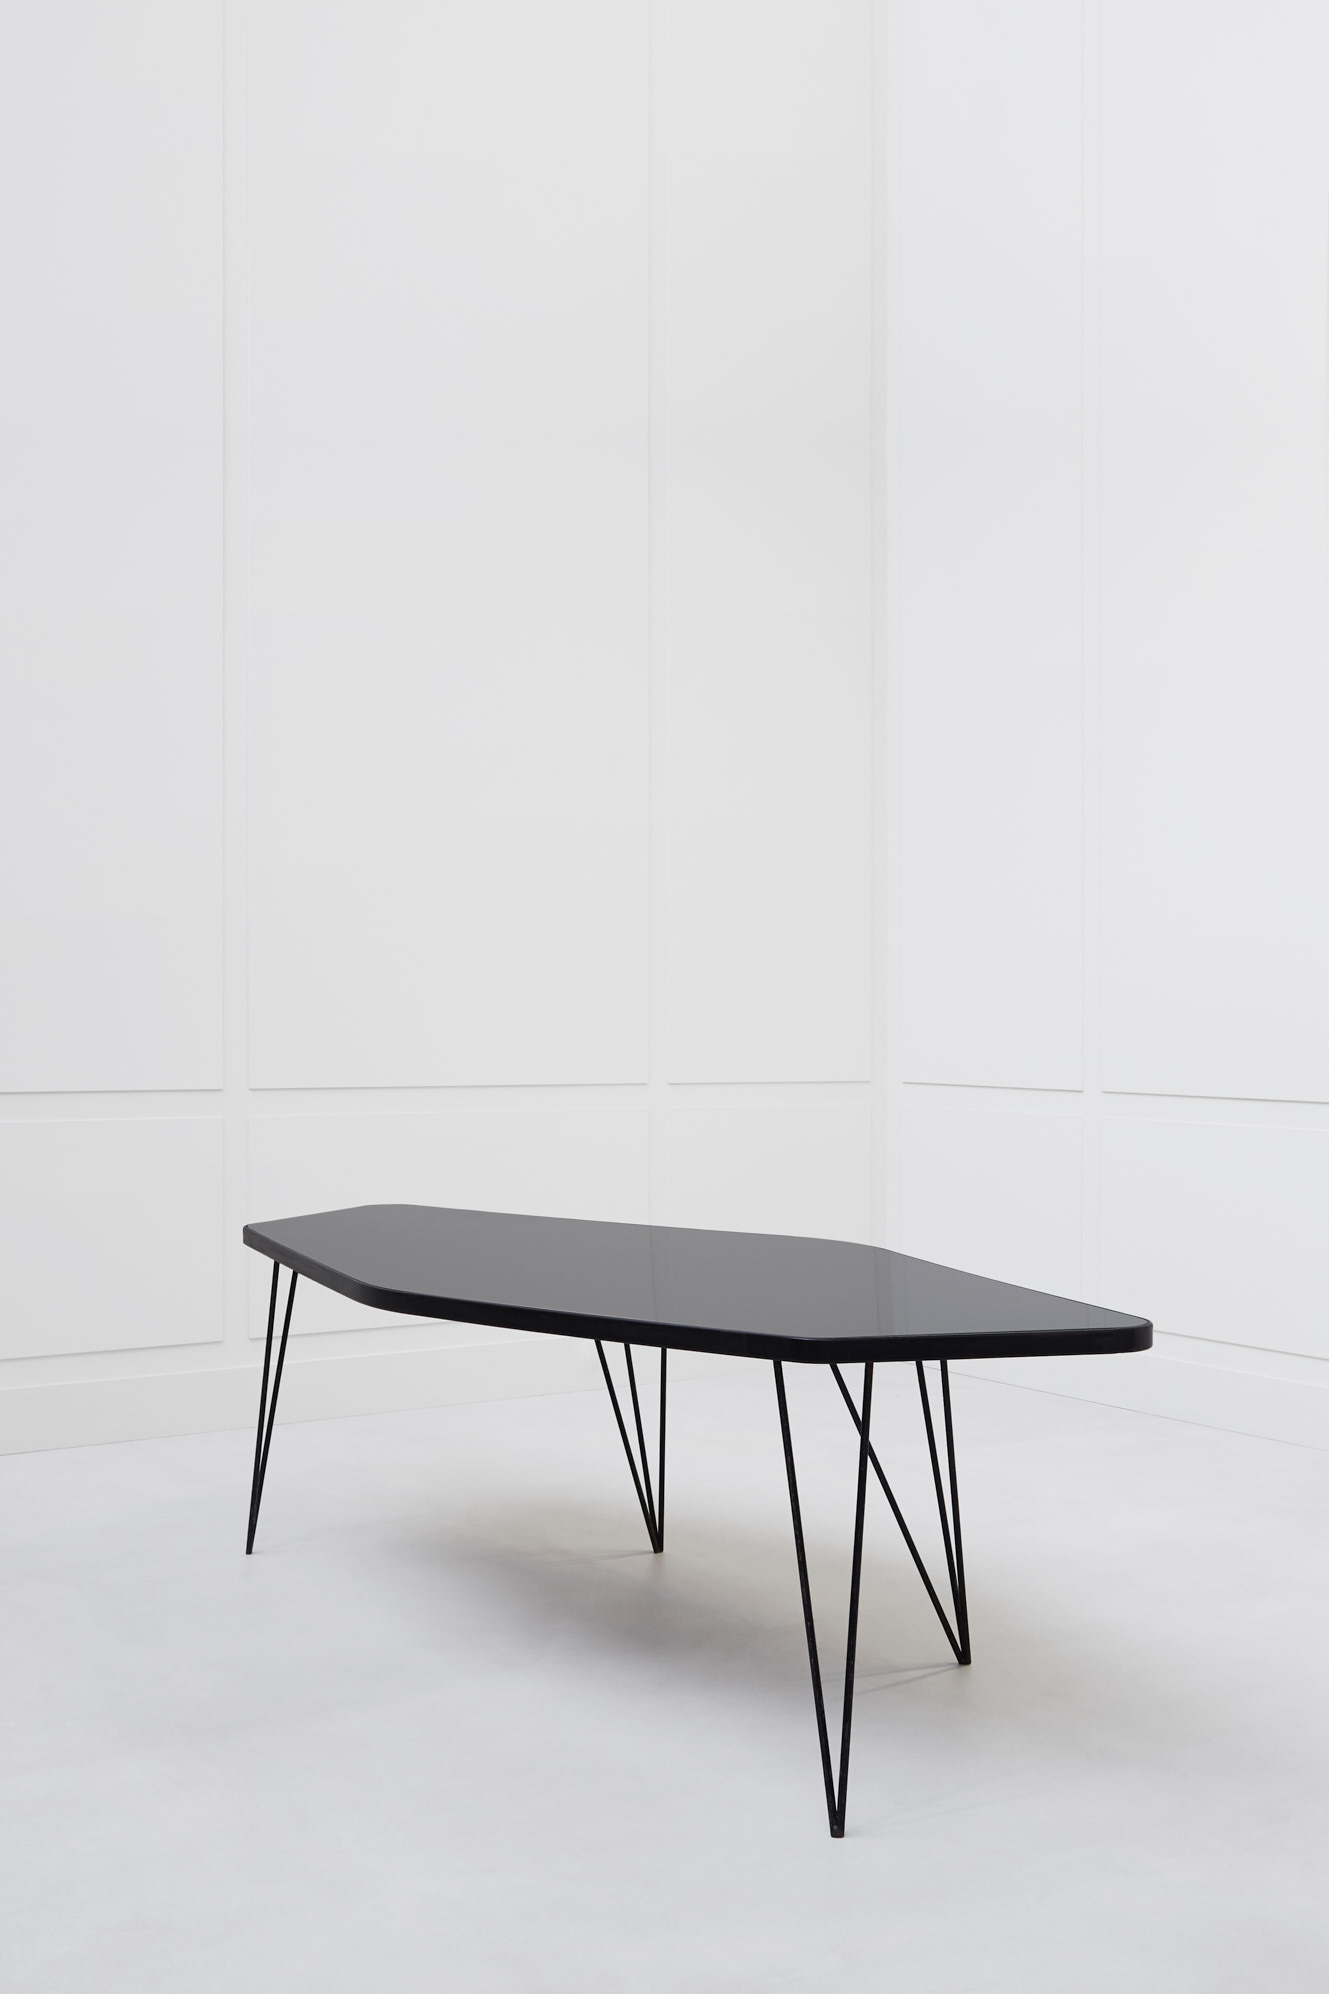 Joaquim Tenreiro, ‘Abstrata’ table, vue 03